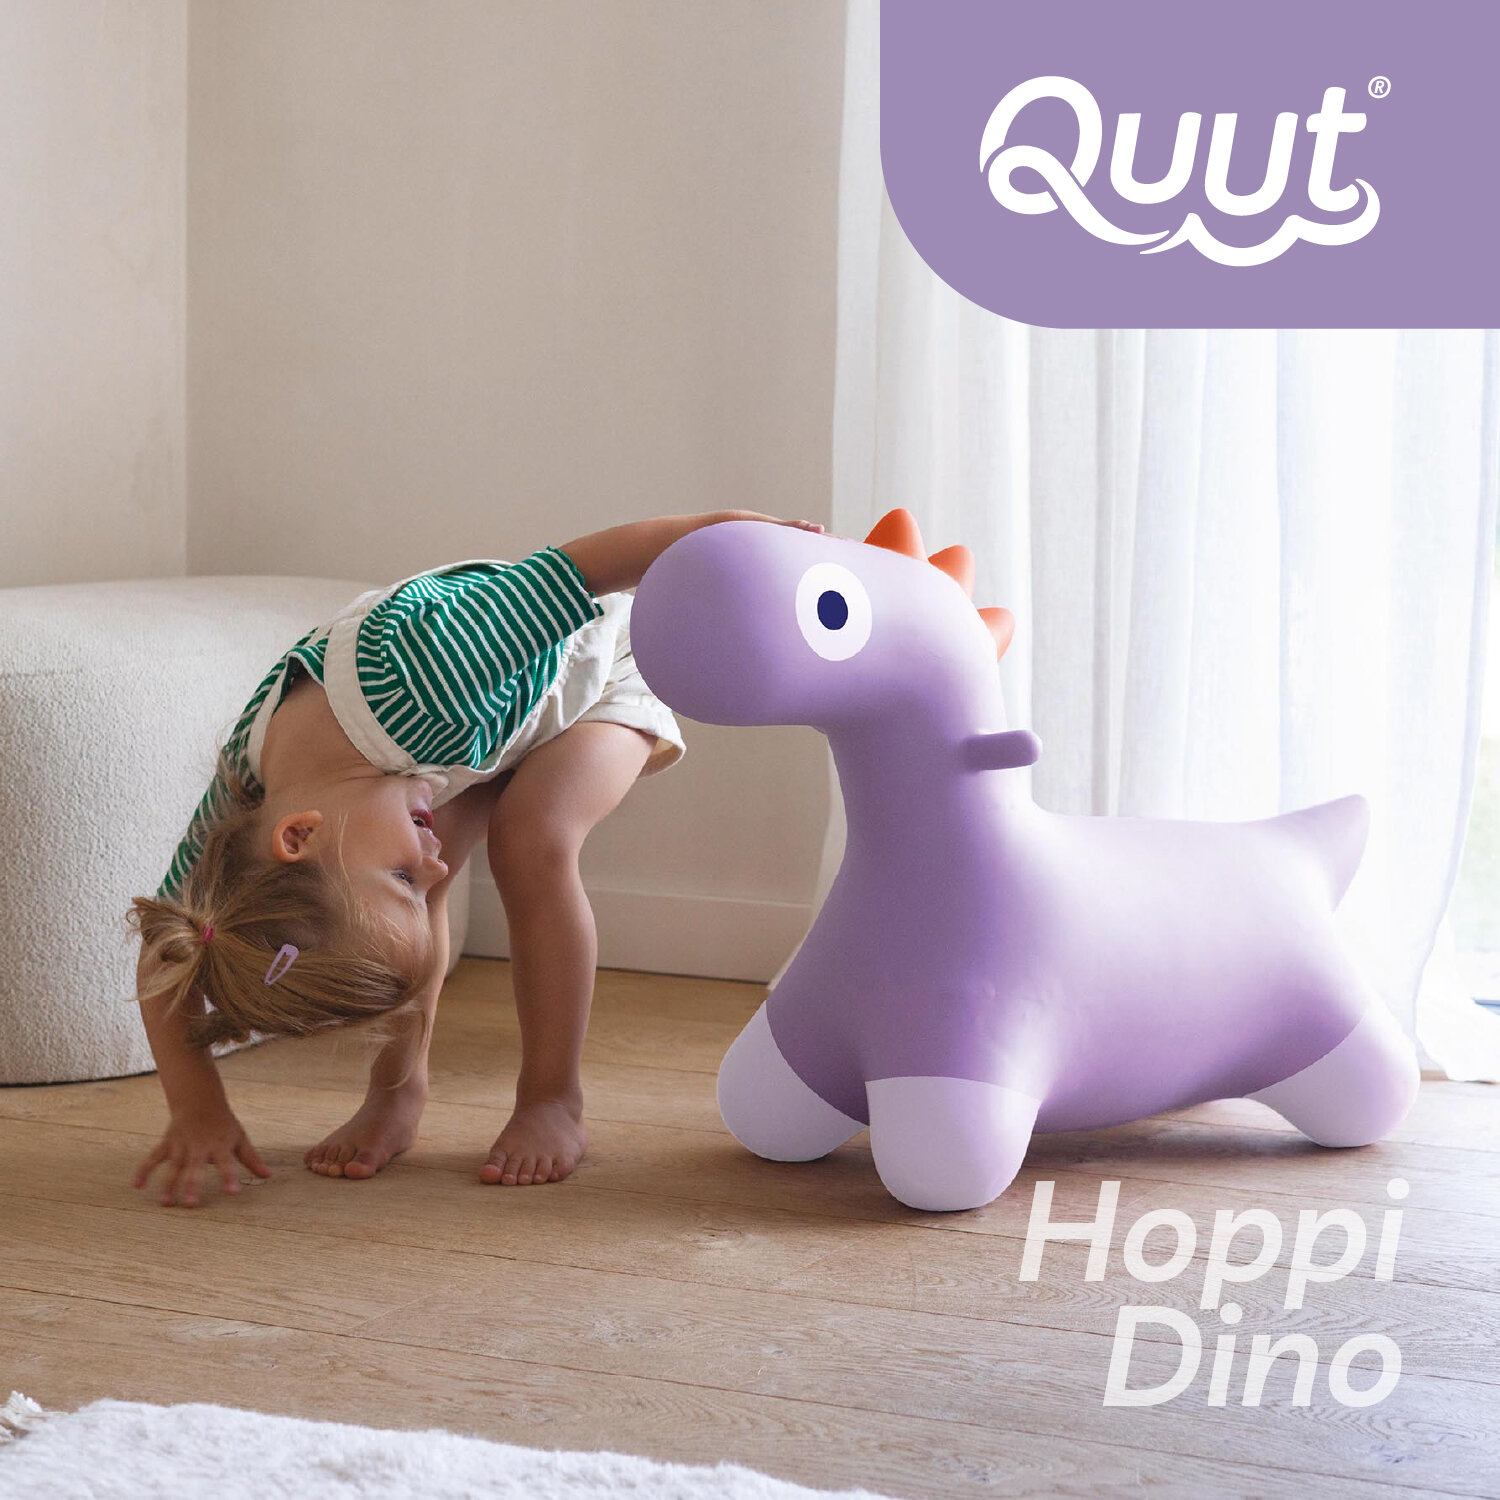 Надувная резиновая игрушка прыгун Quut Hoppi Dino для детей